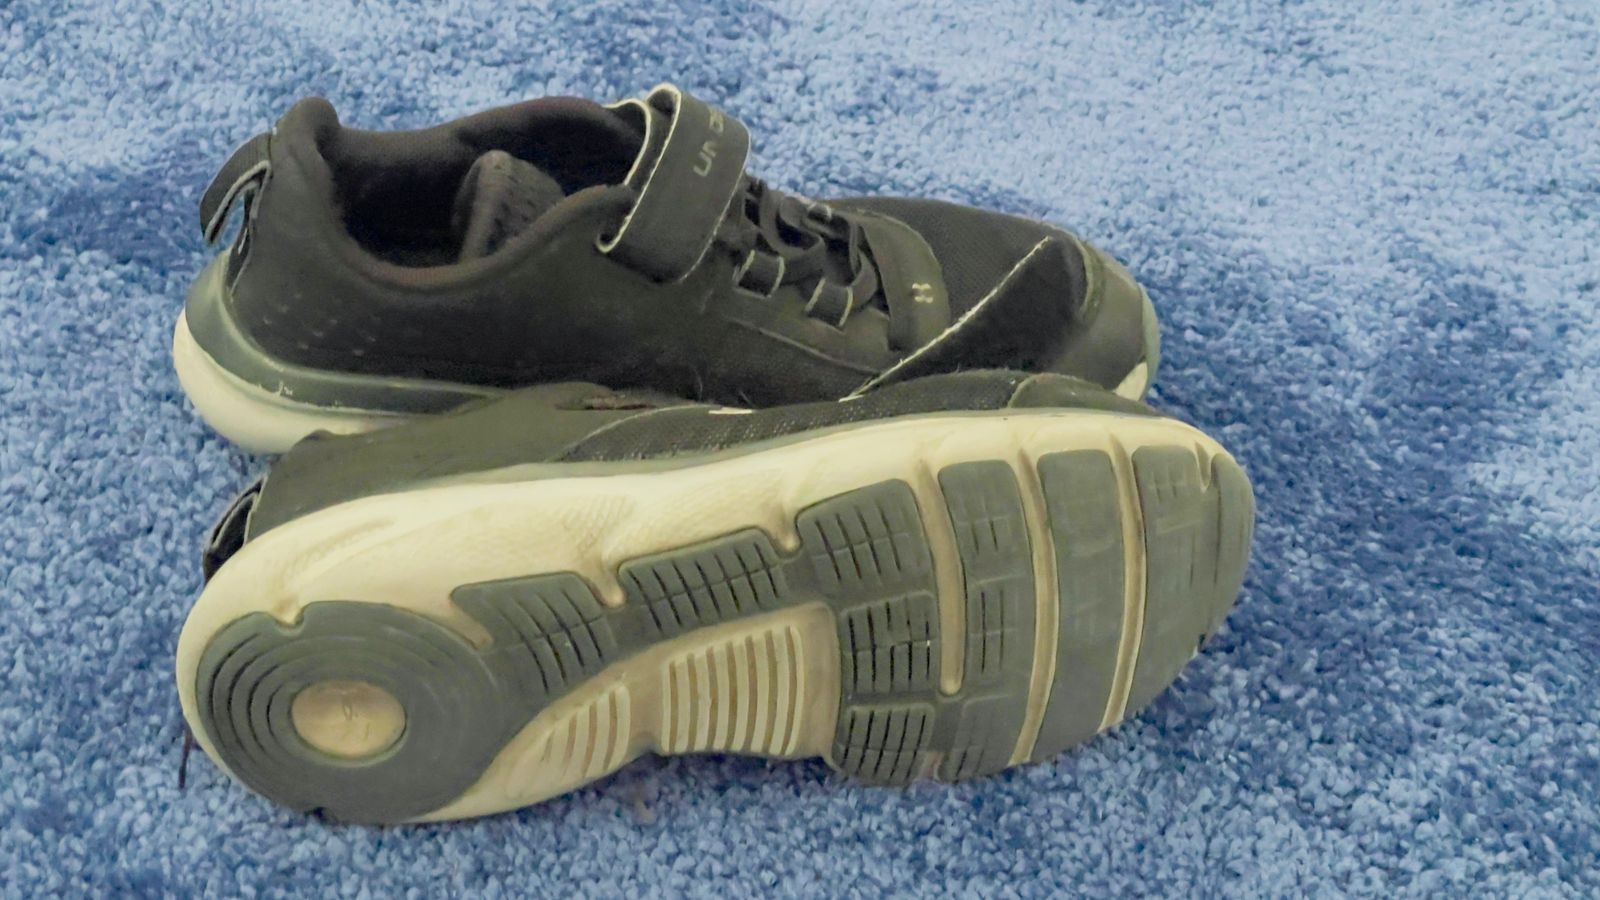 ropa y zapatos - tenis de niños size 2, 21/2, 2Y, usado de marca (topper, Nike y under armor) 5